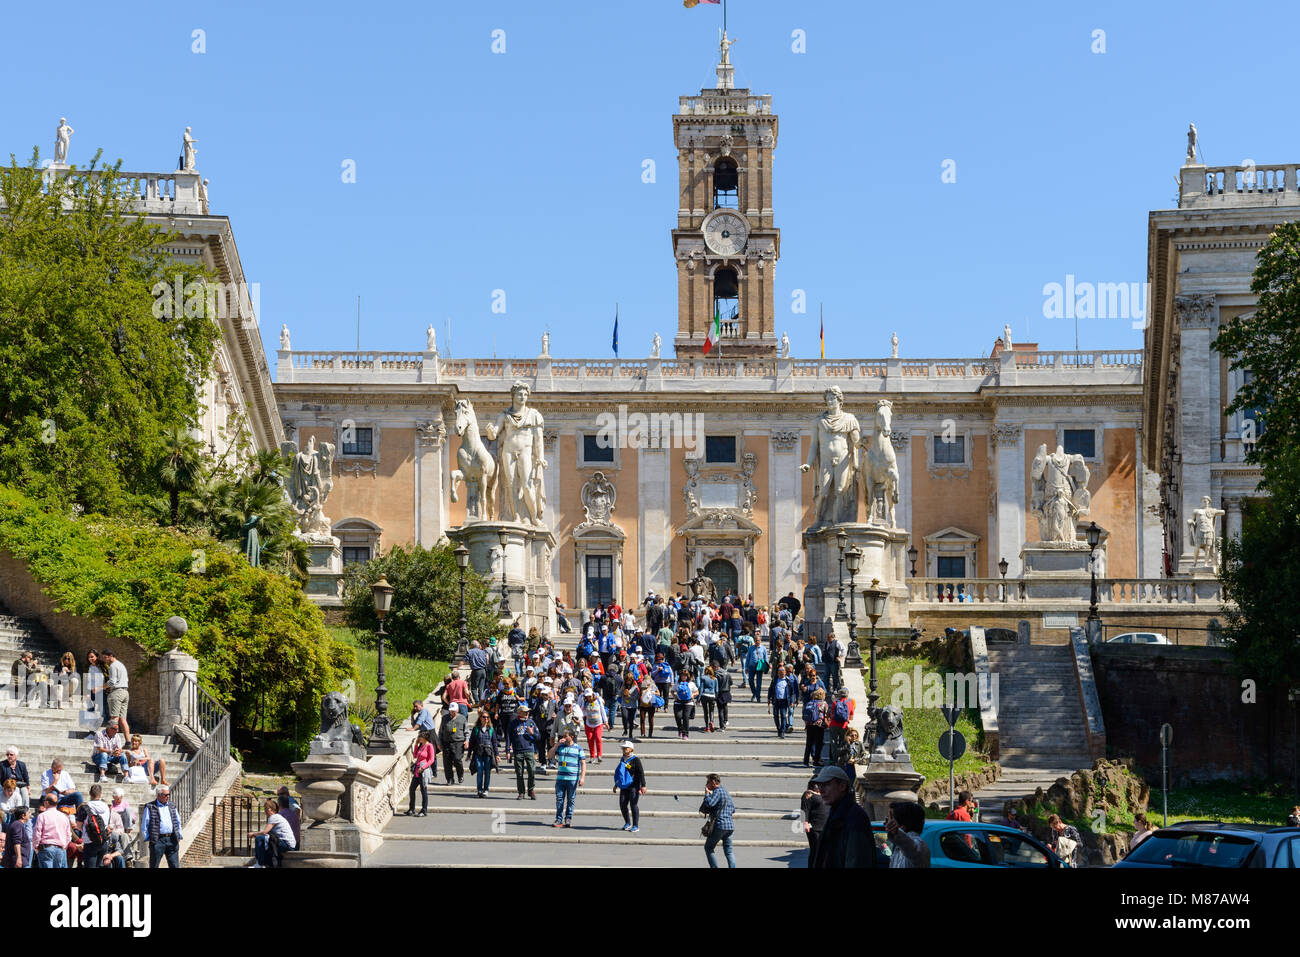 Roma, Italia - 23 Aprile 2017: la gente in Campidoglio, il Campidoglio cordonata, al centro dell'immagine che conduce da Via del Teatro di Marcello a Piazz Foto Stock